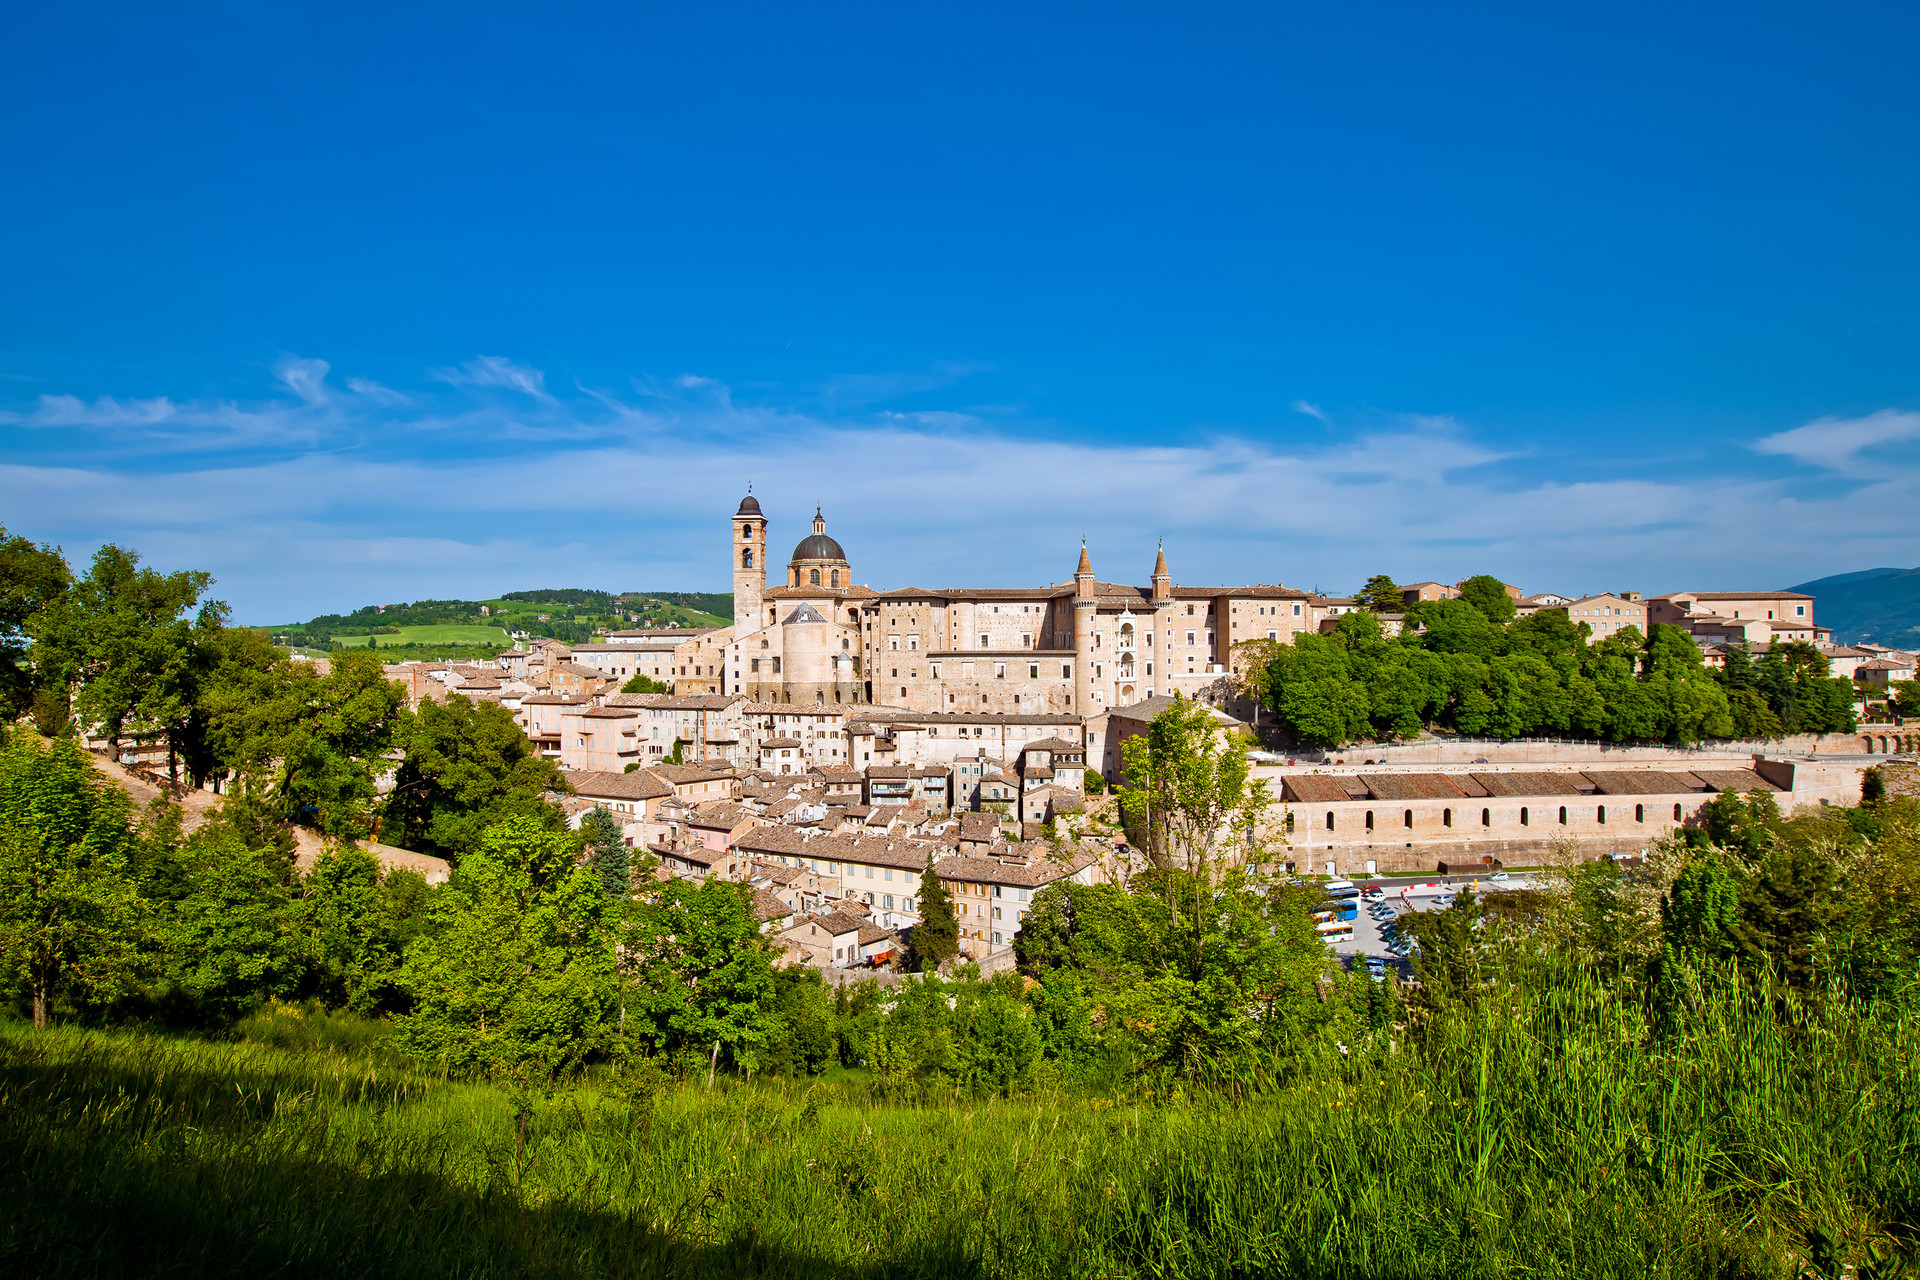 Palazzo Ducale là một lâu đài, một câu chuyện cổ tích của vùng đất Urbino. Ảnh: CNN.